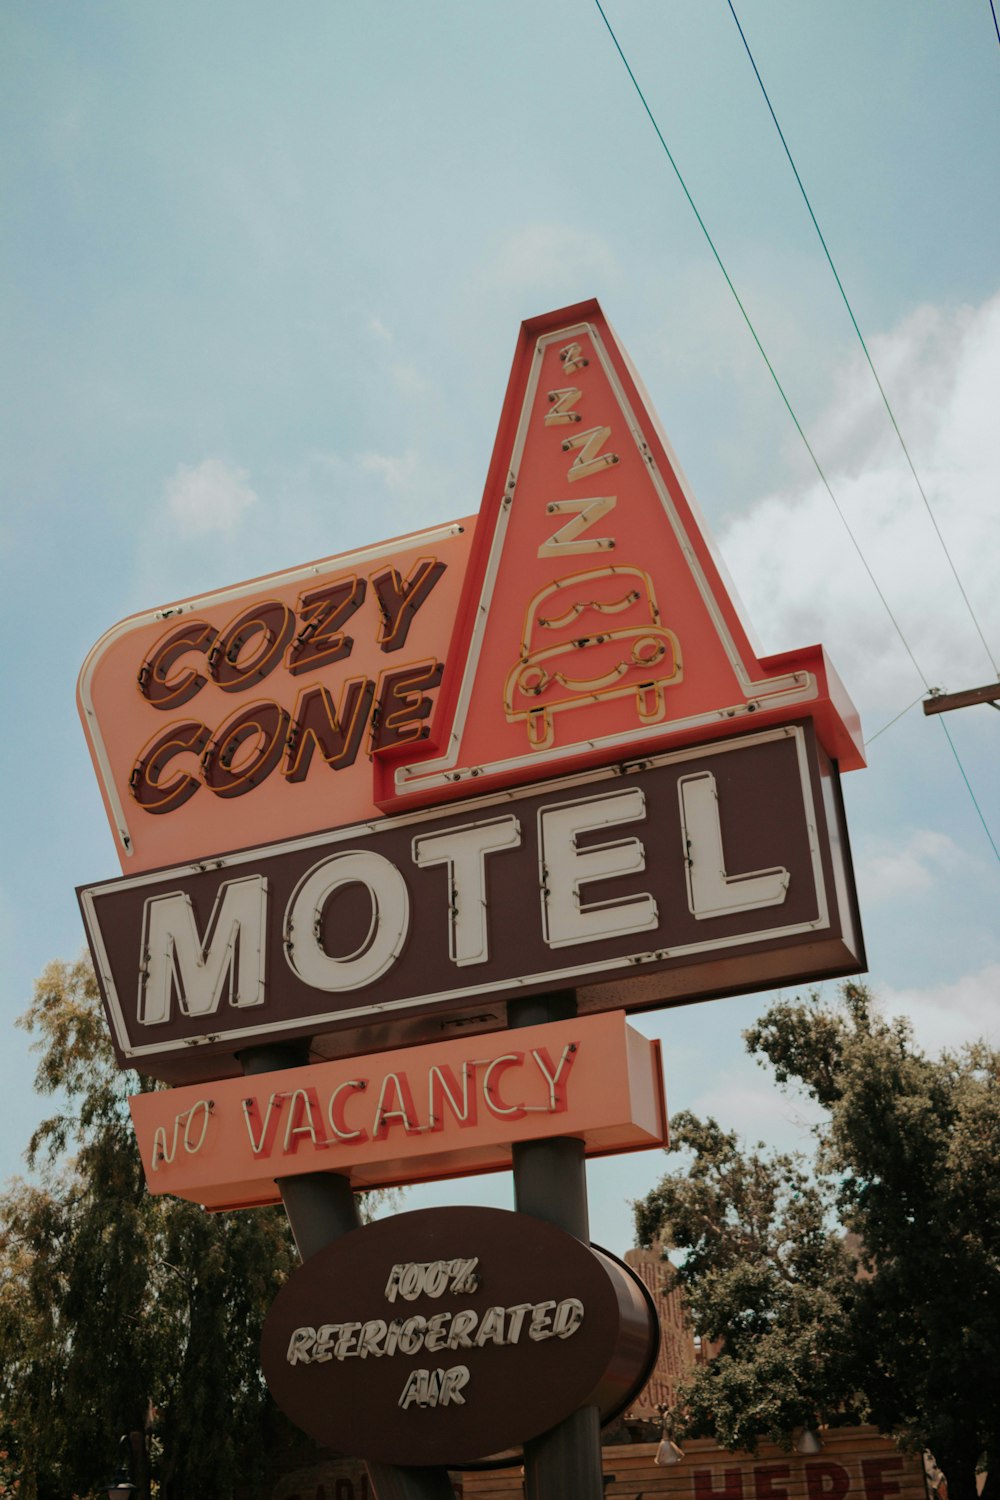 Cozy Cone Motel road sign